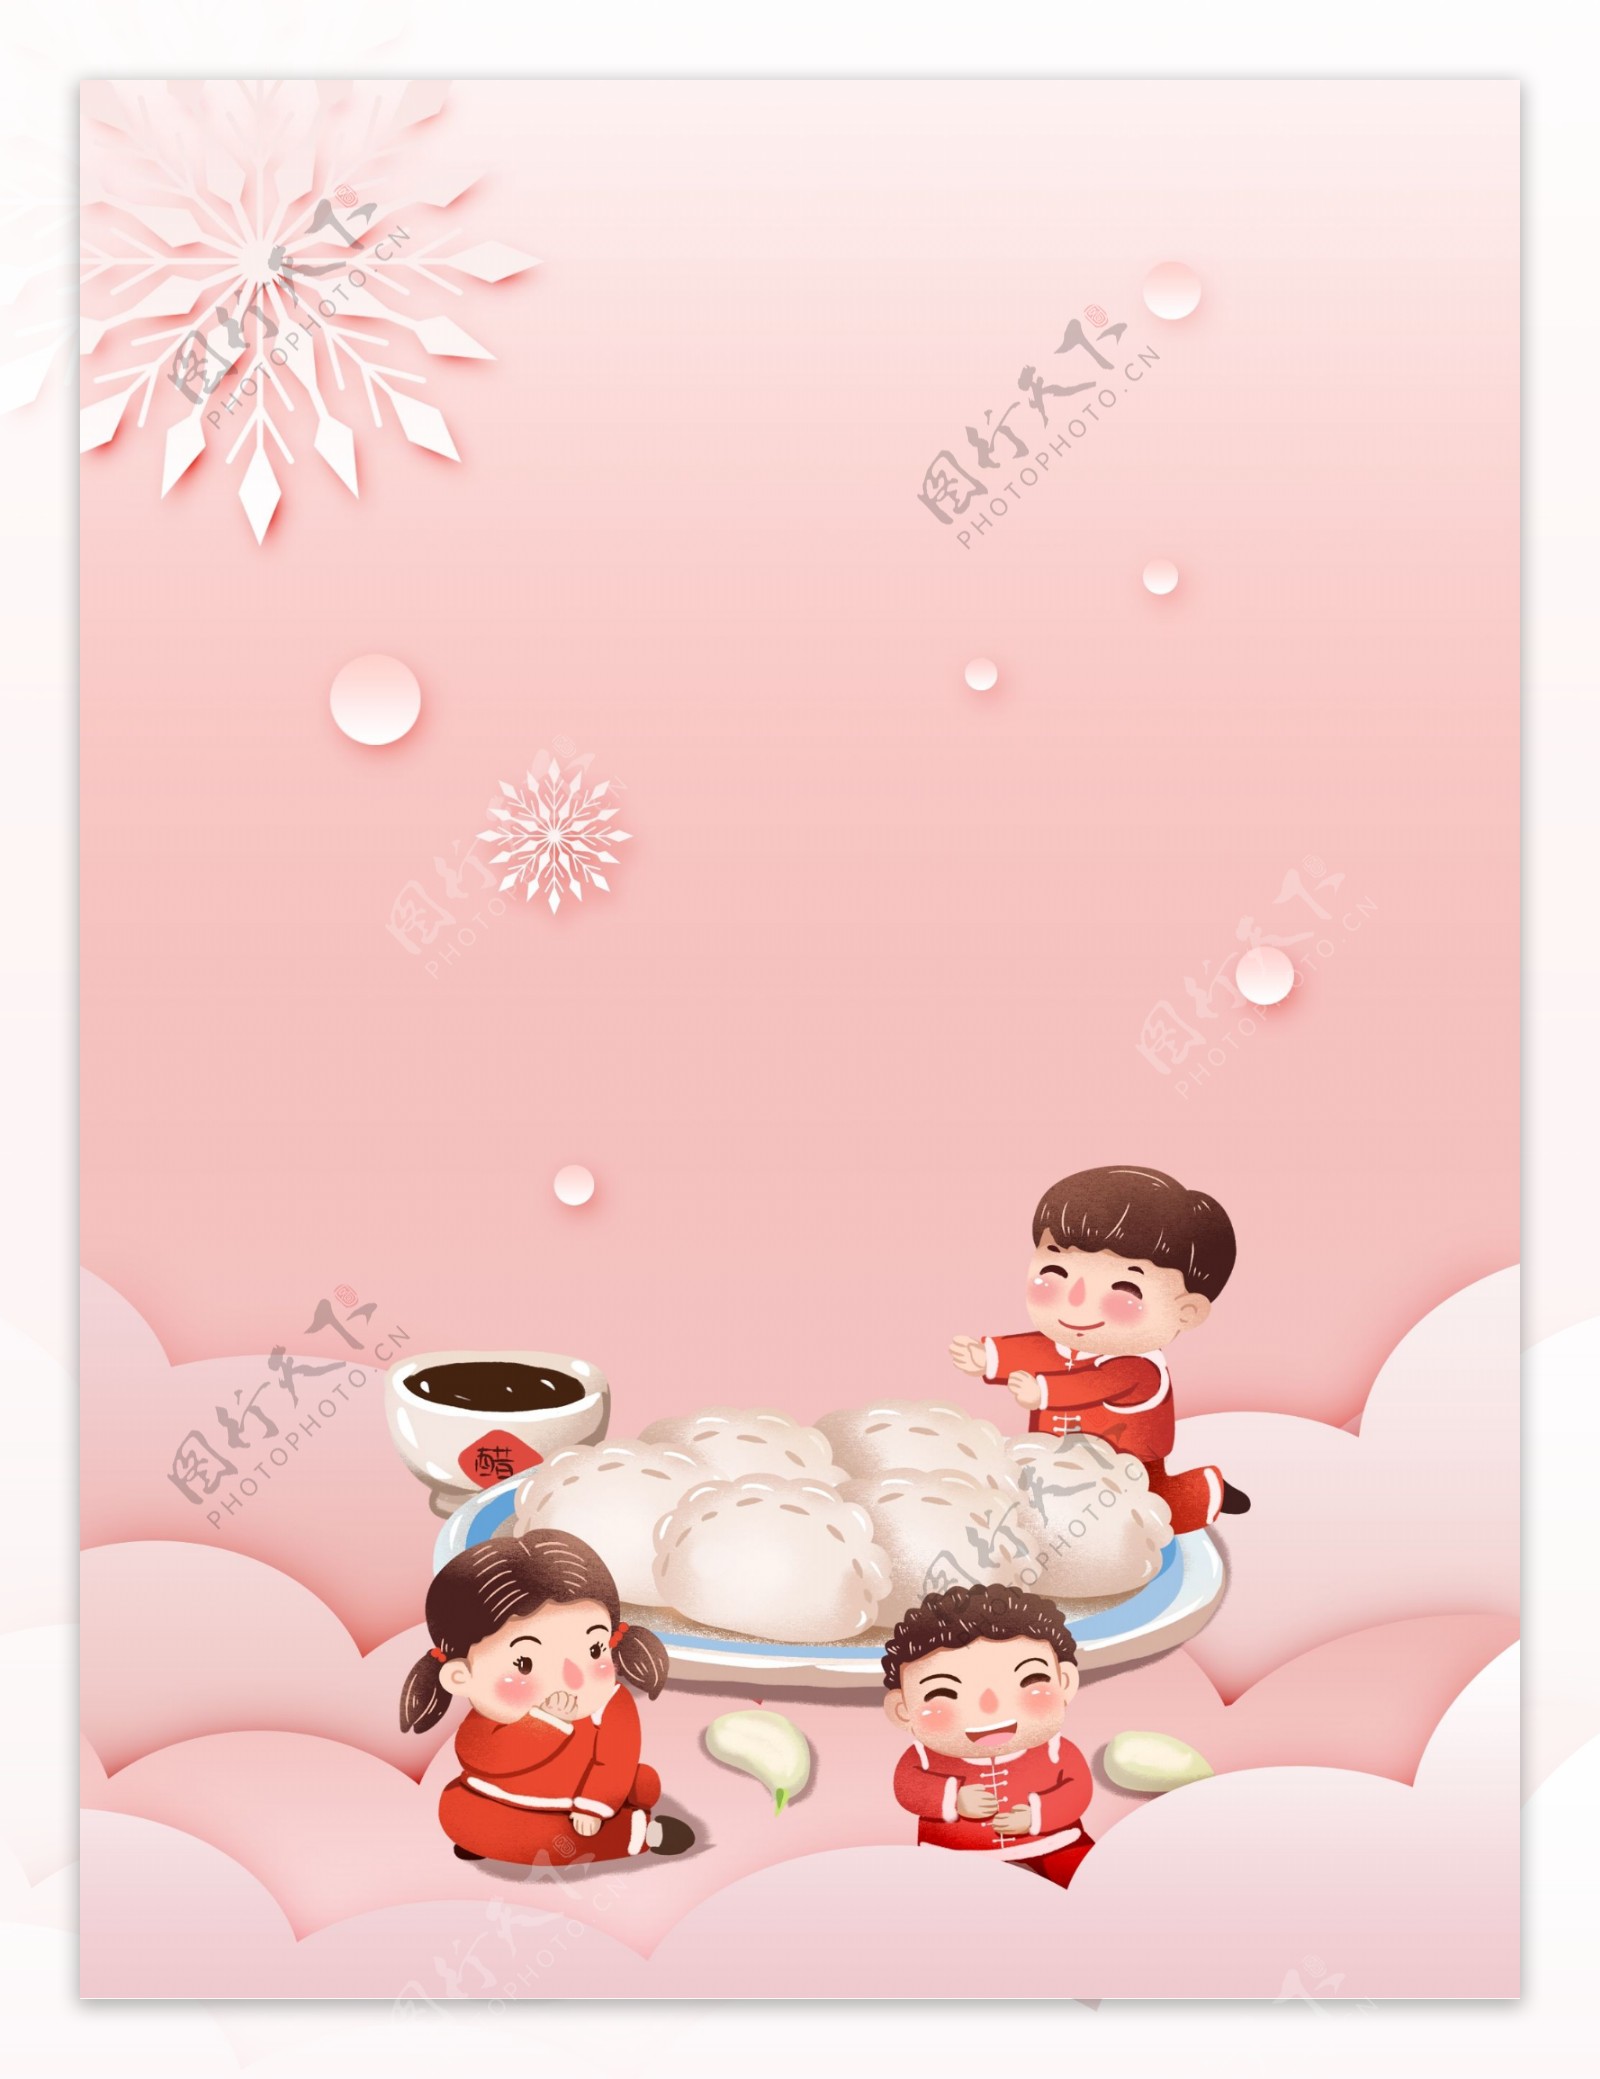 冬至节气吃水饺的儿童背景设计